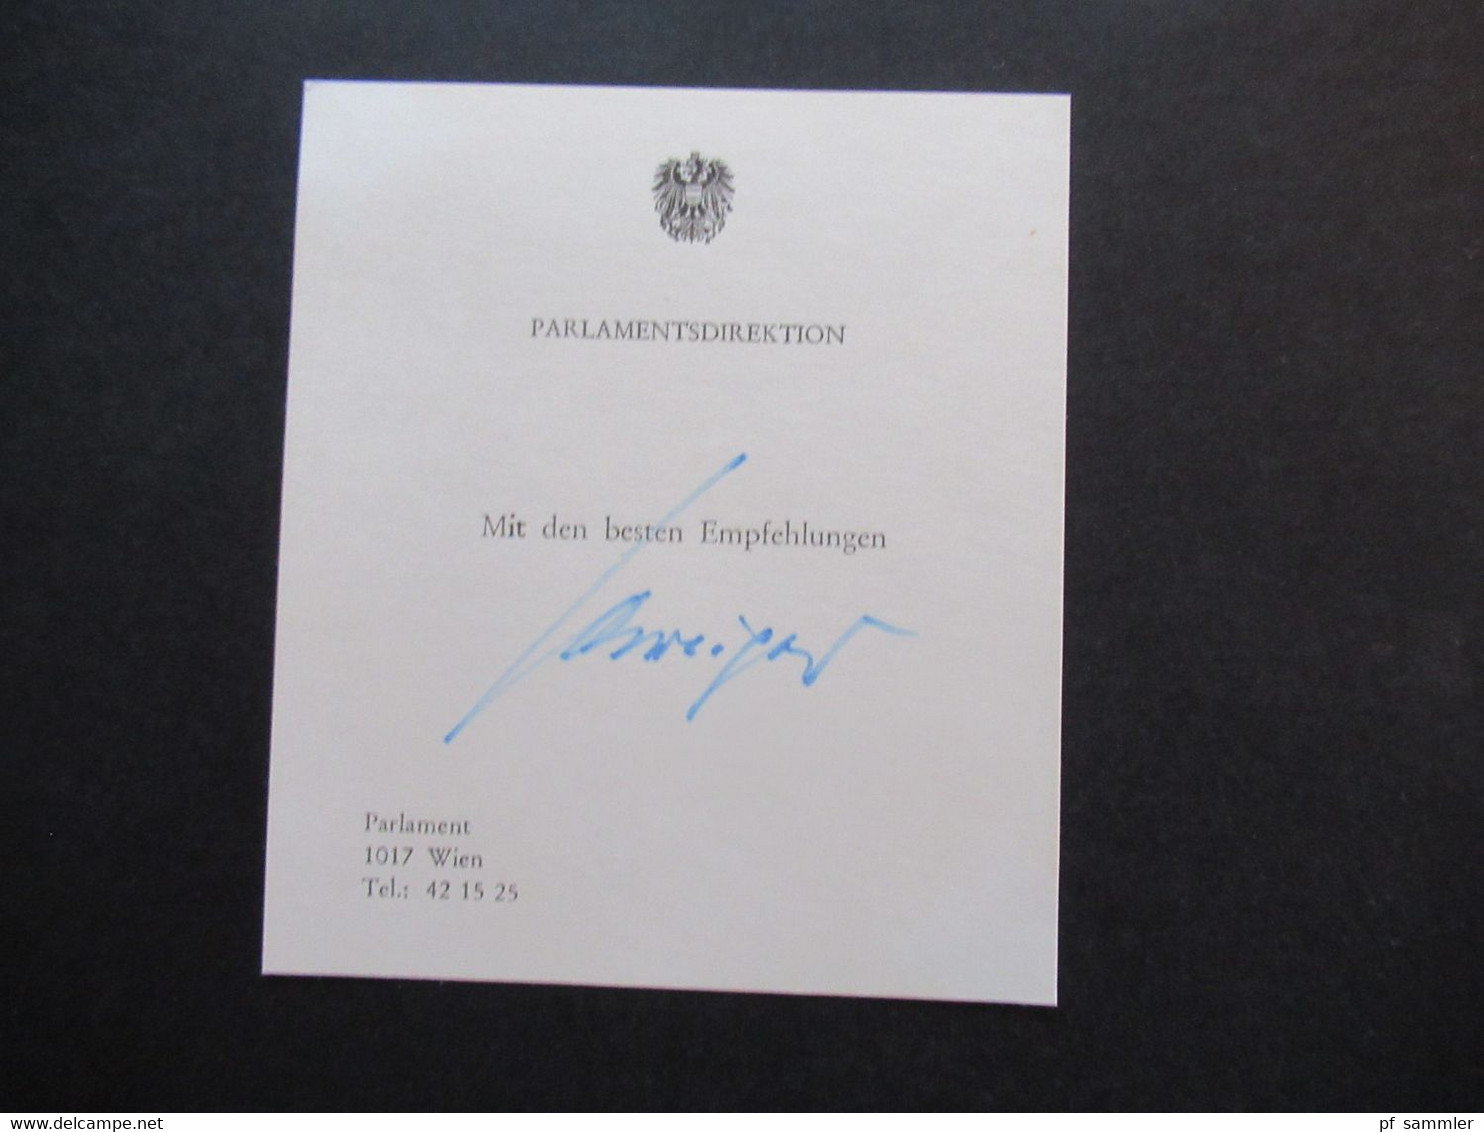 Österreich 3 Visitenkarten mit Unterschrift Parlamentsdirektion Mit den besten Empfehlungen. Autogramme Wien Parlament